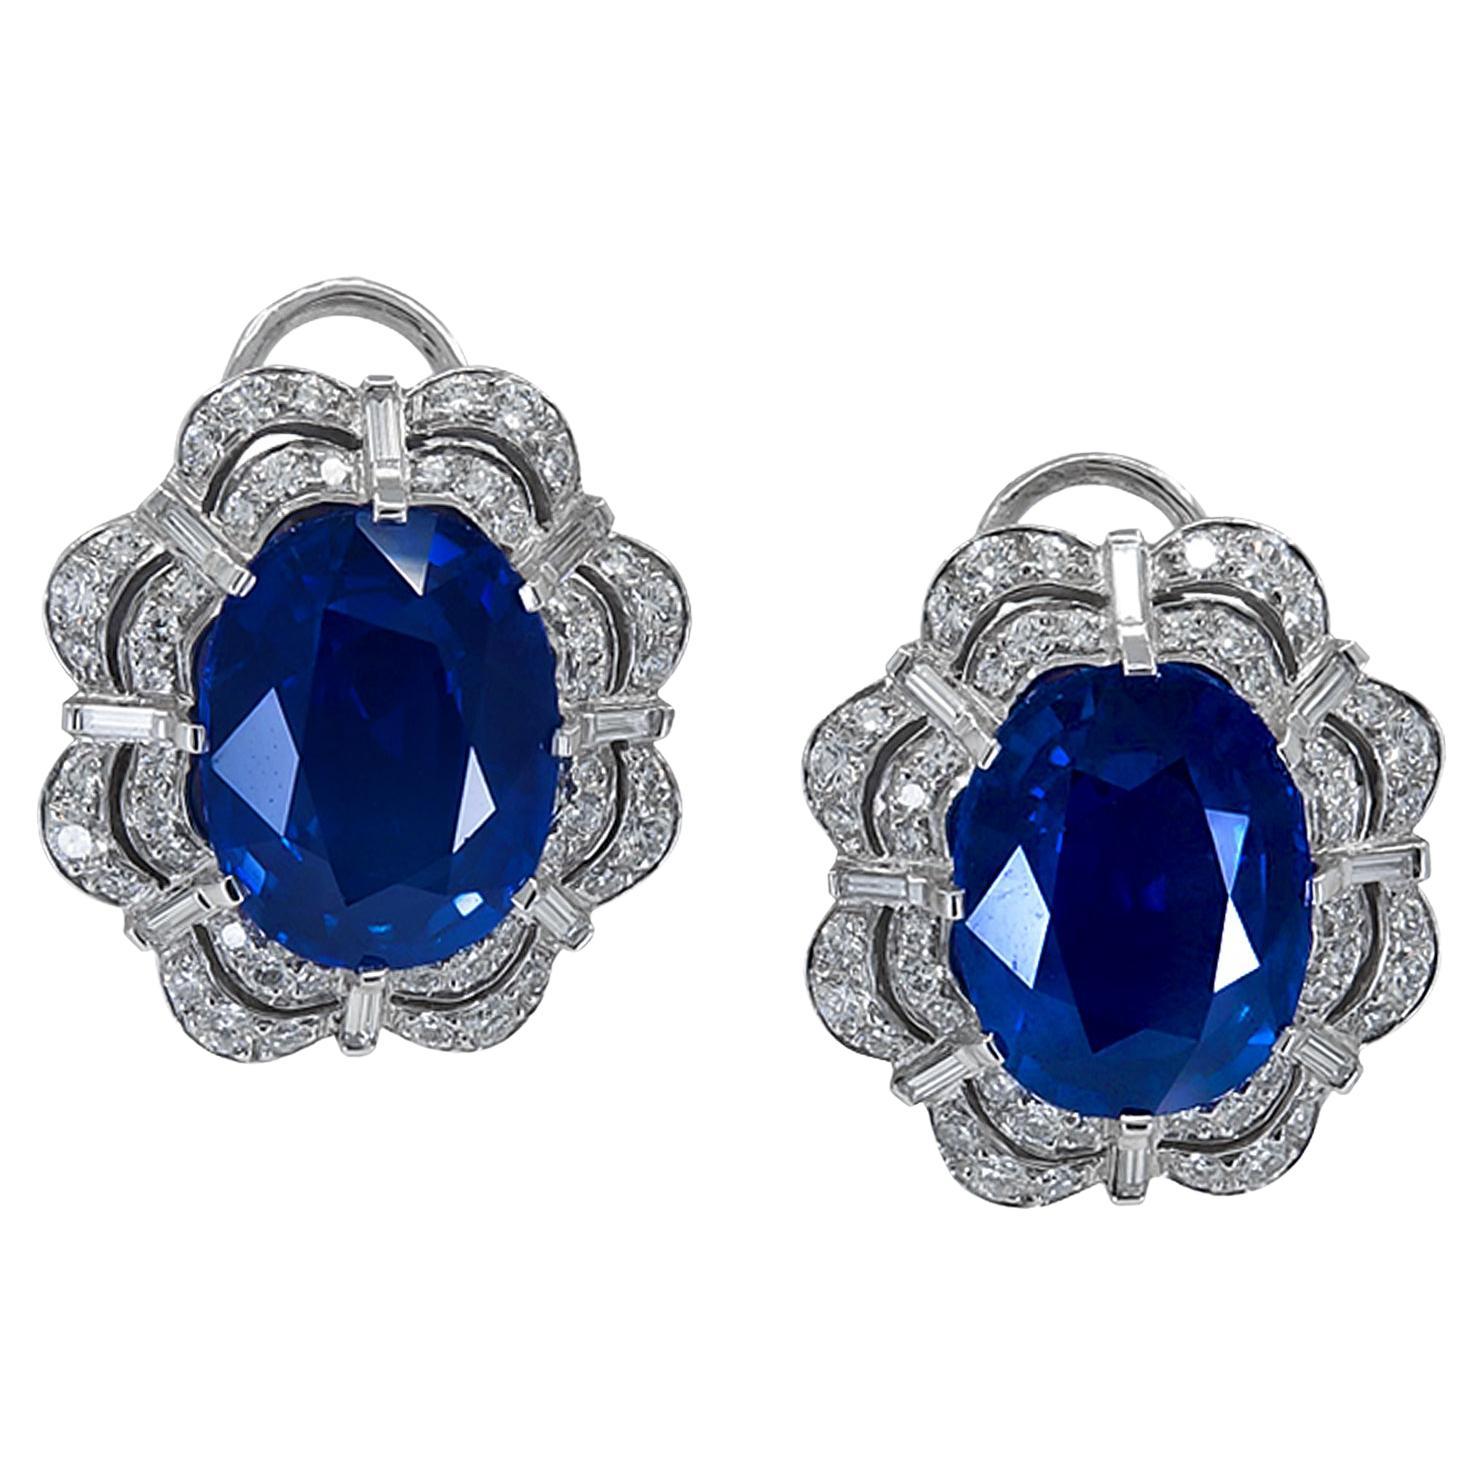 Spectra Fine Jewelry AGL Certified 21.28 Carat Sapphire Diamond Earrings For Sale